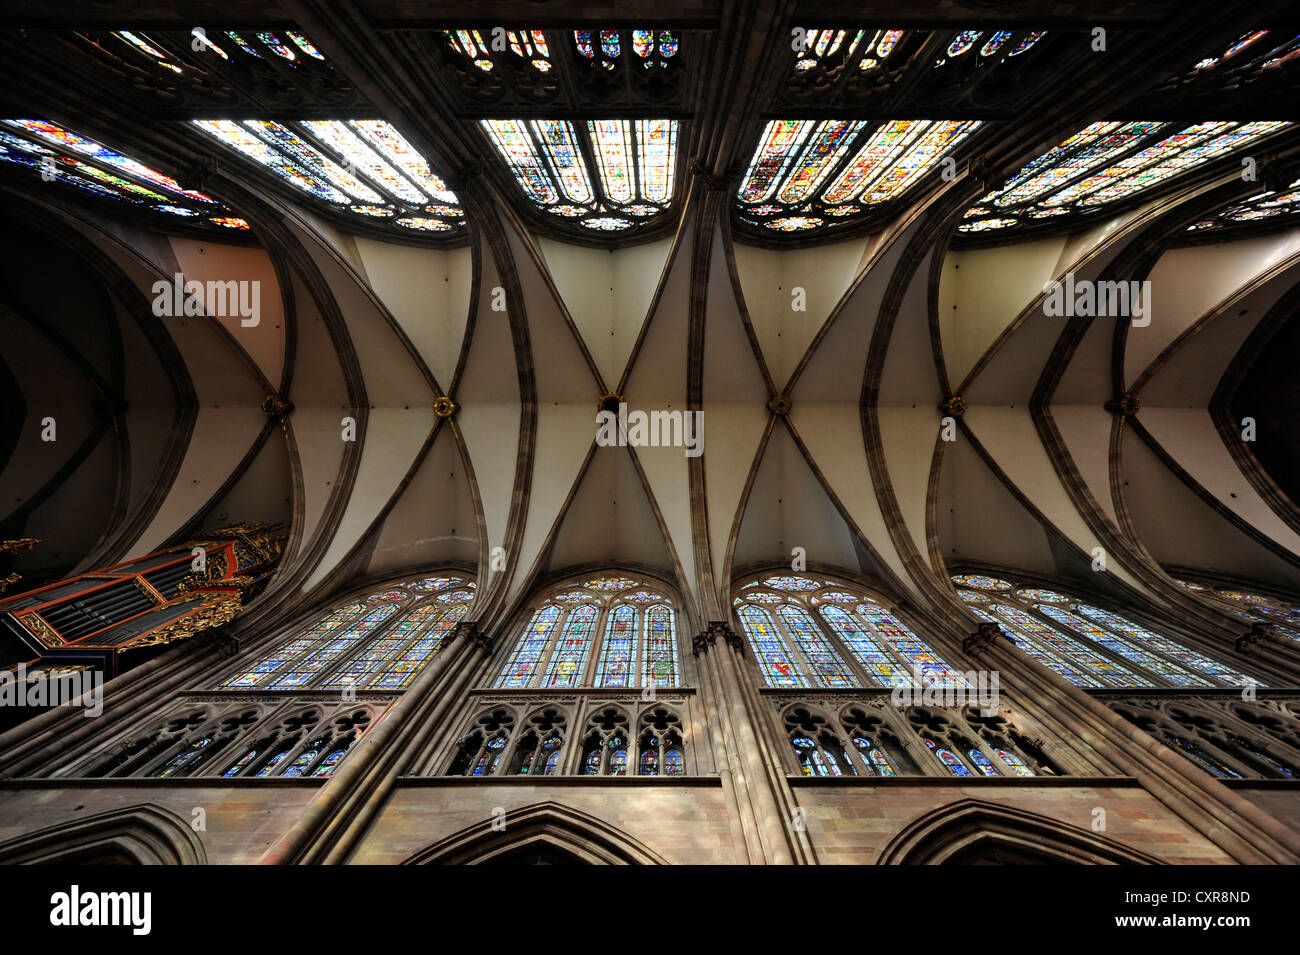 Cso, réticulée, plafond nef, vue de l'intérieur, la cathédrale de Strasbourg, la cathédrale de Notre Dame de Strasbourg, Strasbourg Banque D'Images